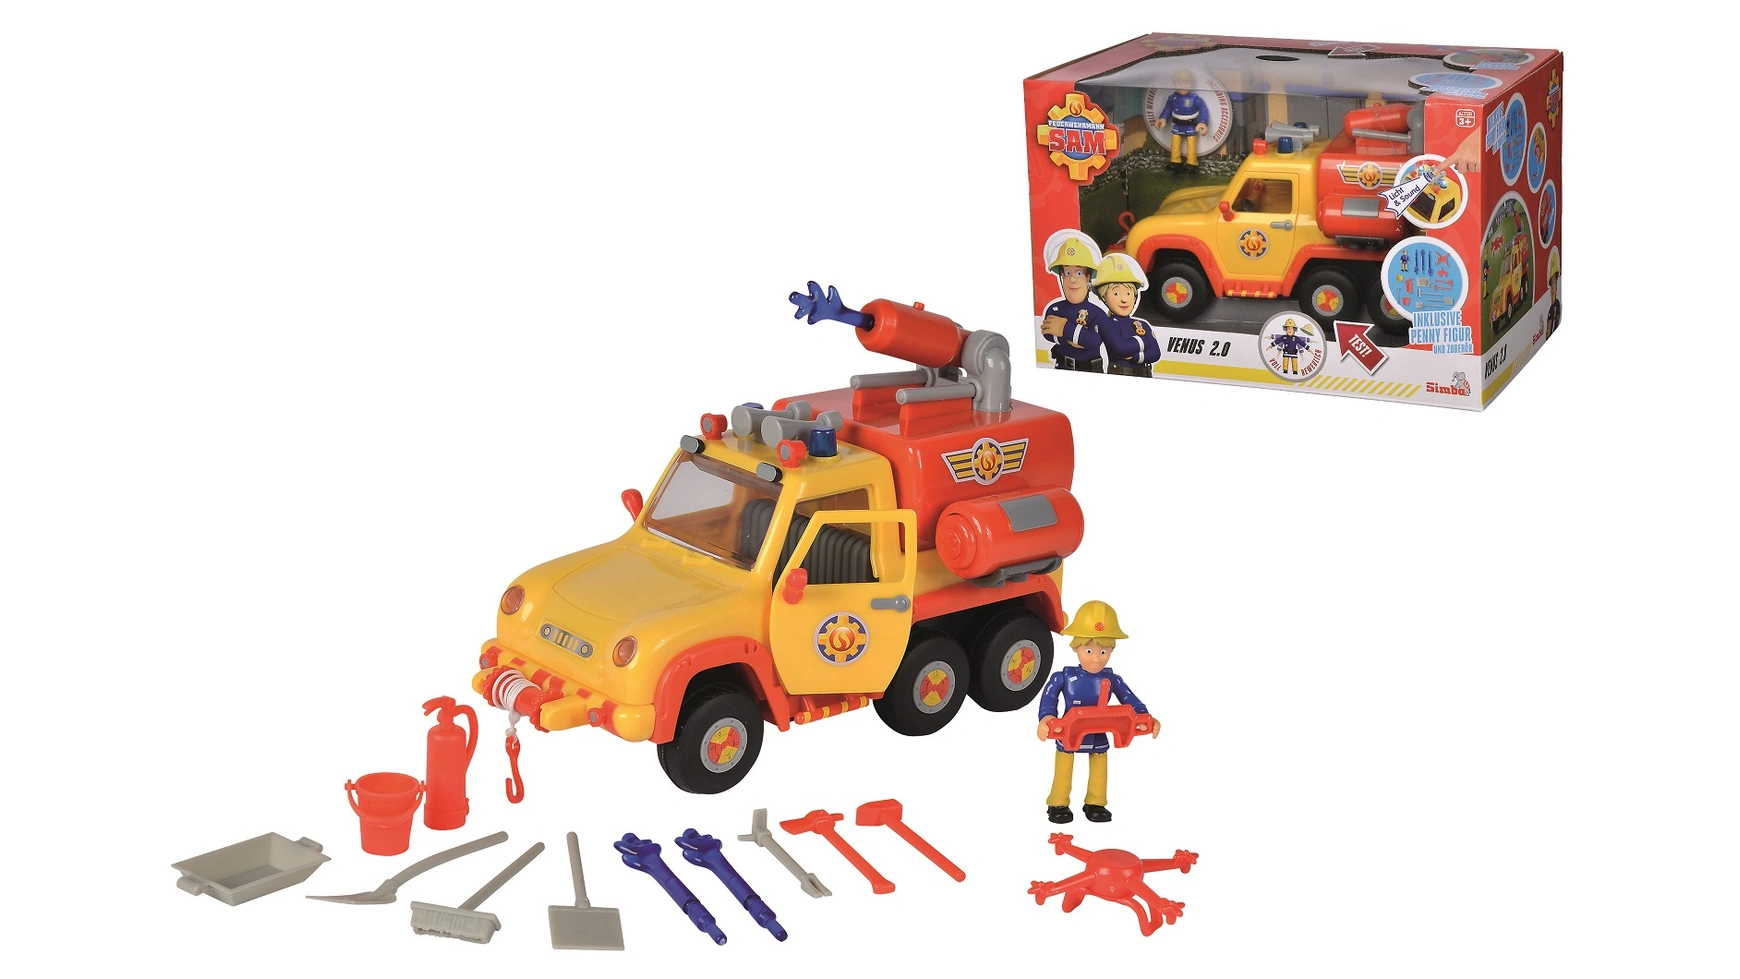 Пожарный сэм пожарная машина сэма венера 20 с фигуркой Simba игровой набор daesung пожарная машина со шлангом и фигуркой